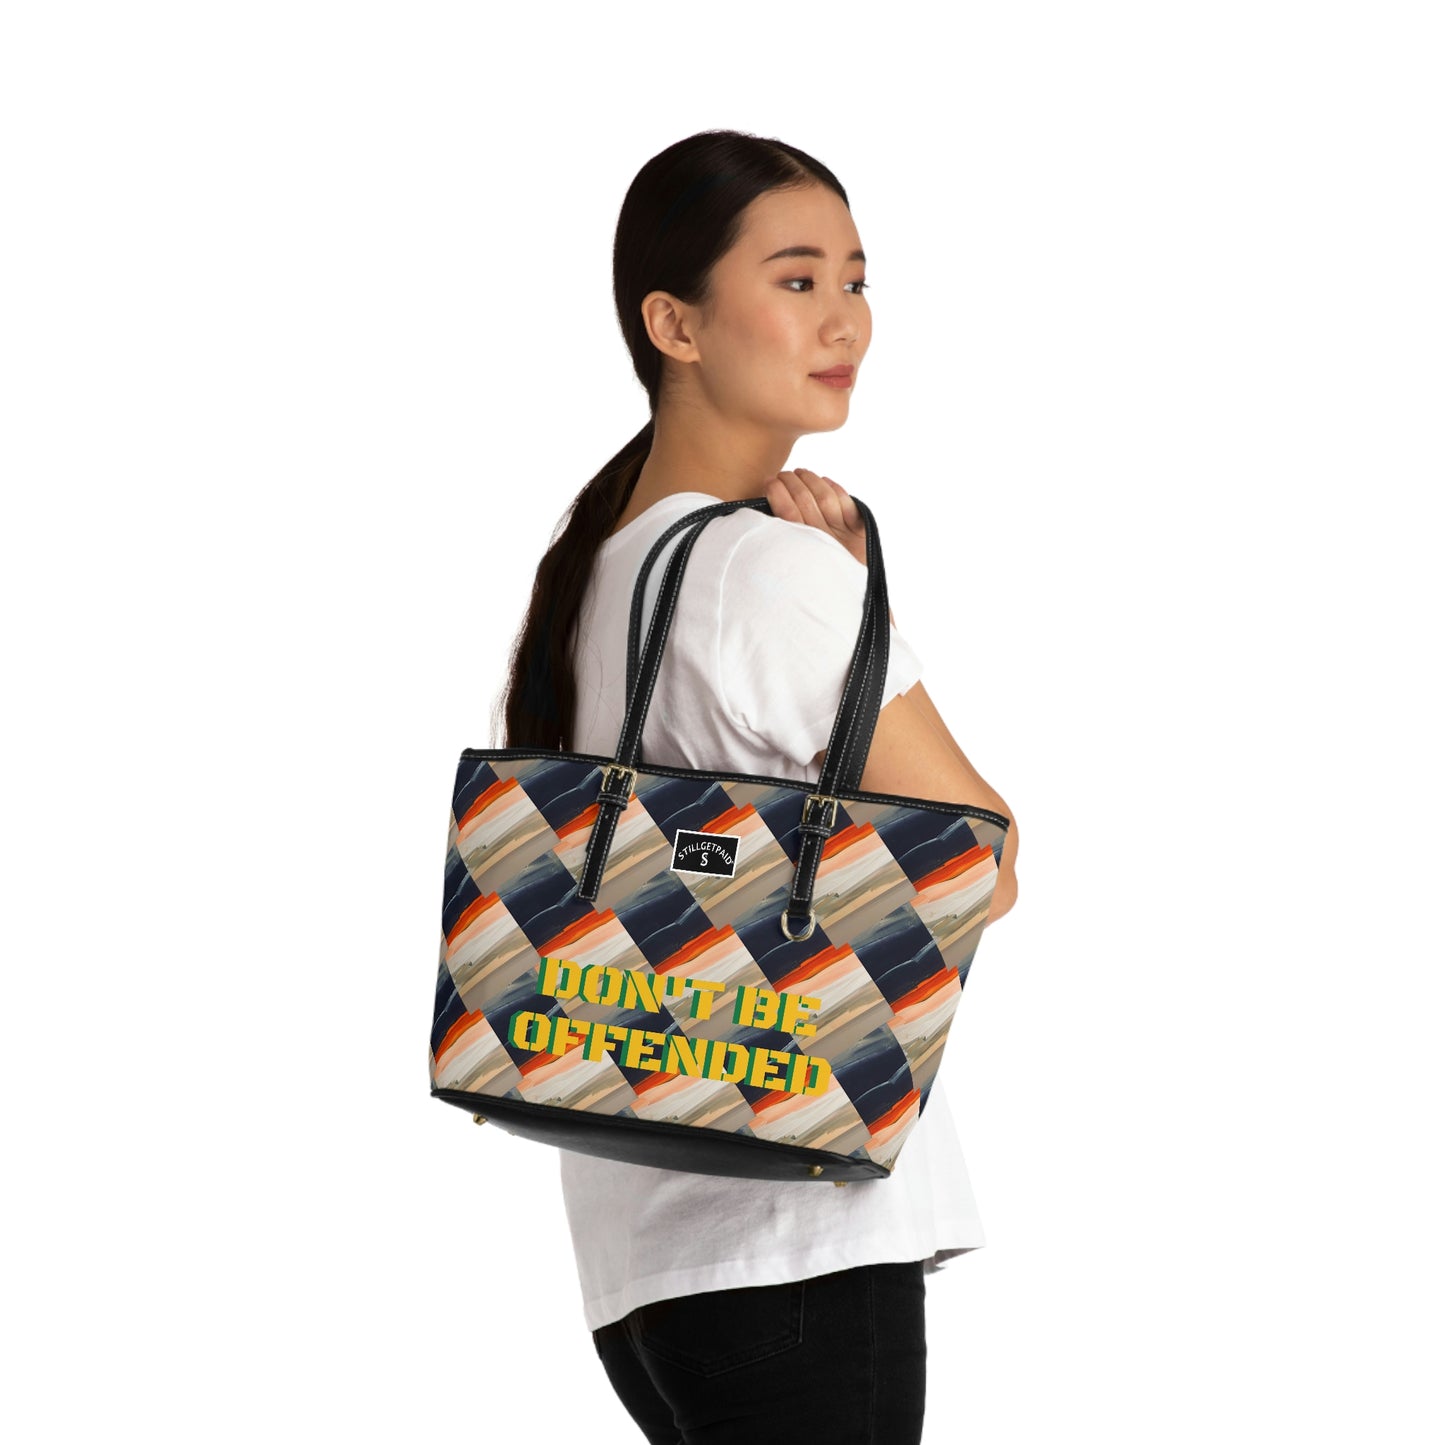 STILLGETPAID® APPAREL PU Leather Shoulder Bag